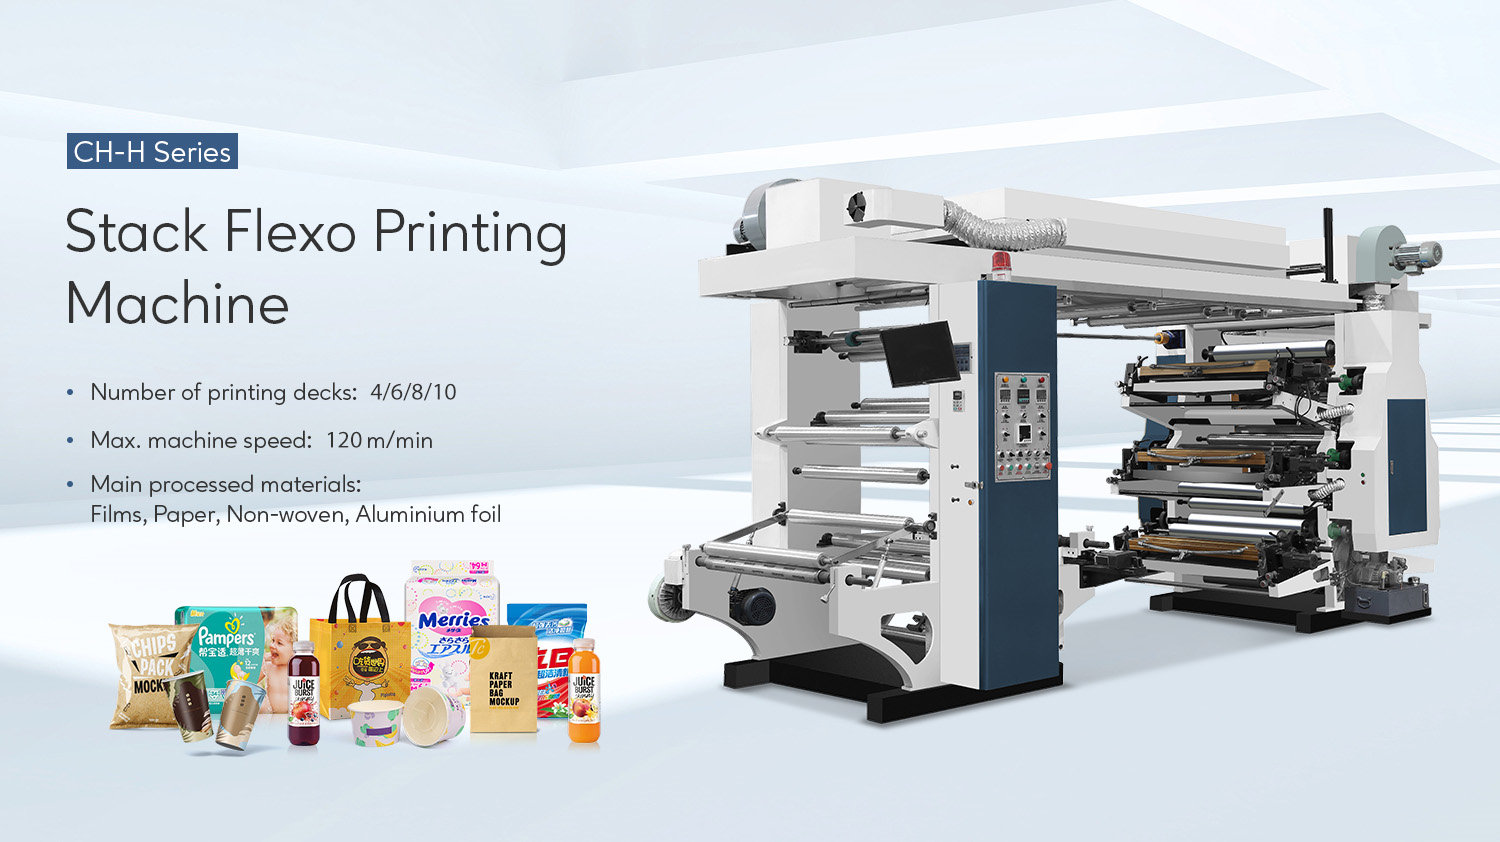 Stacked Flexo տպագրական մեքենաների բազմակողմանիությունը